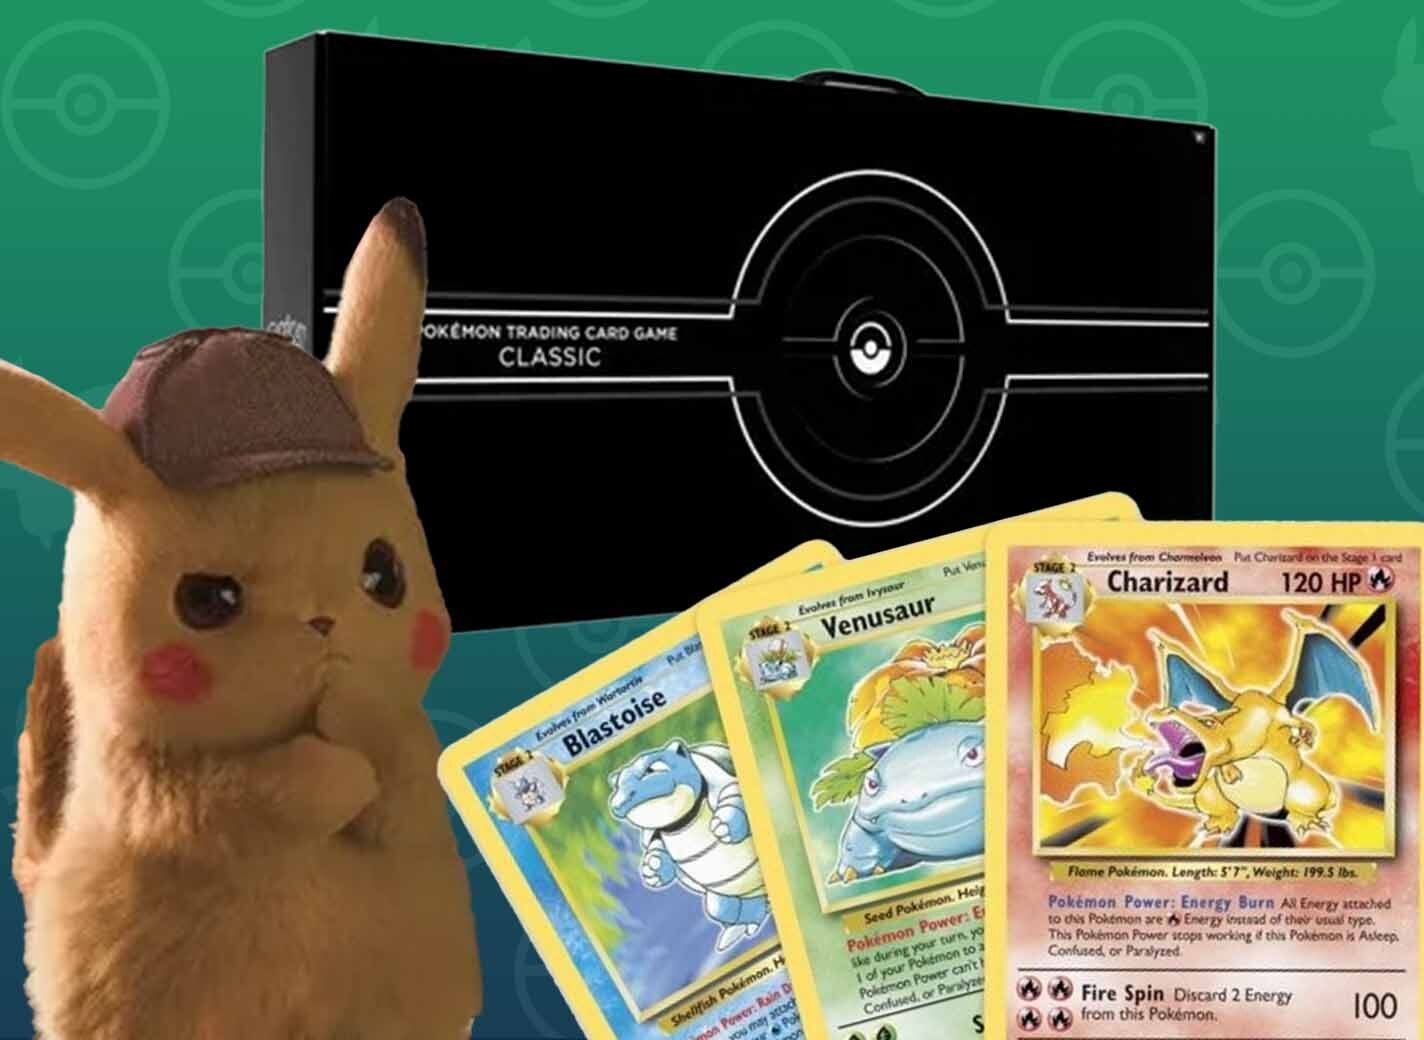 TCG Spotlight: Some Of The Best Pikachu Pokémon Cards